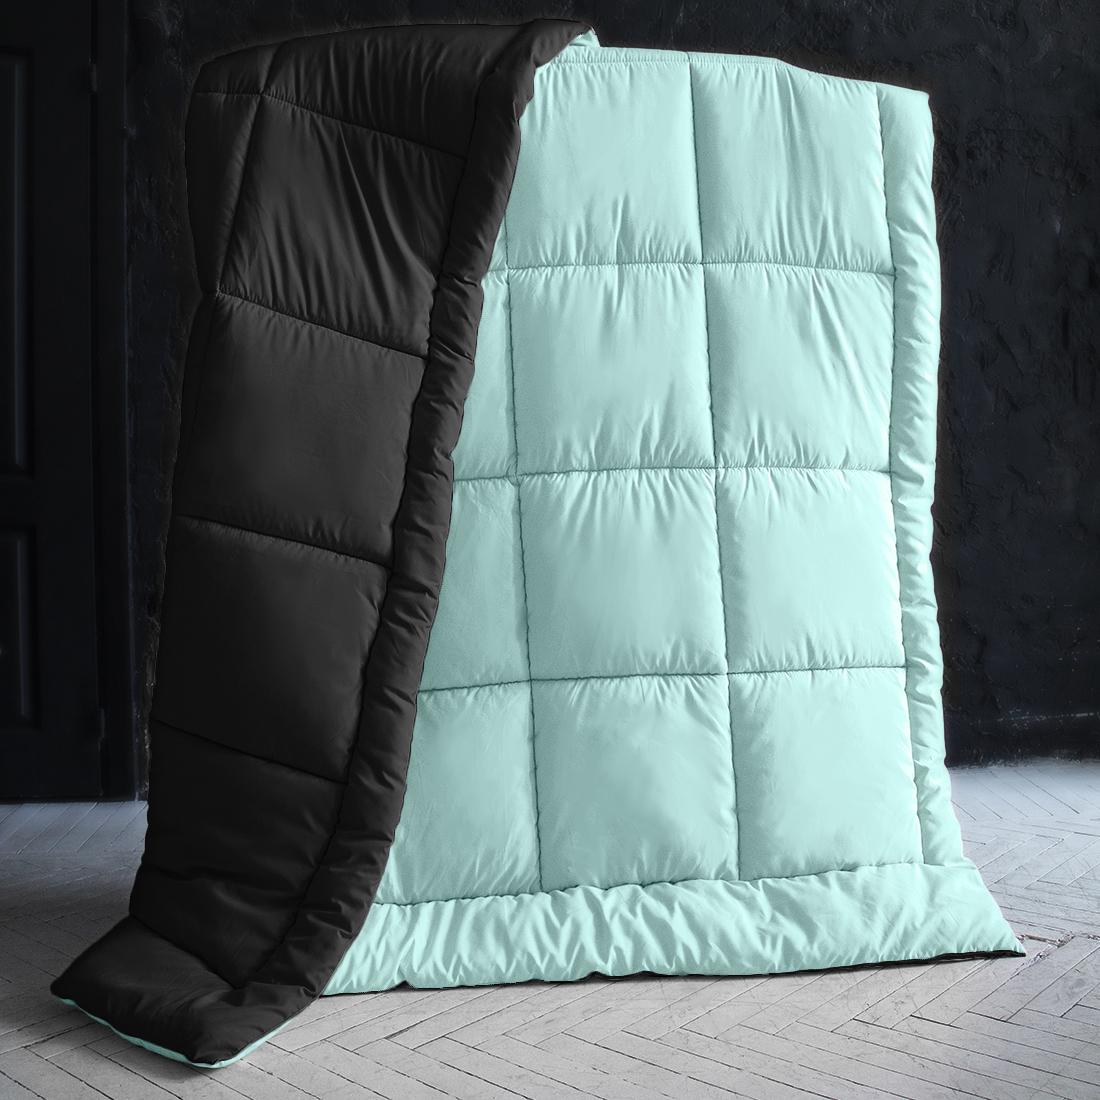 Одеяло MultiColor Цвет: Черный/Нежно-Голубой (175х205 см), размер 175х205 см pva410841 Одеяло MultiColor Цвет: Черный/Нежно-Голубой (175х205 см) - фото 1